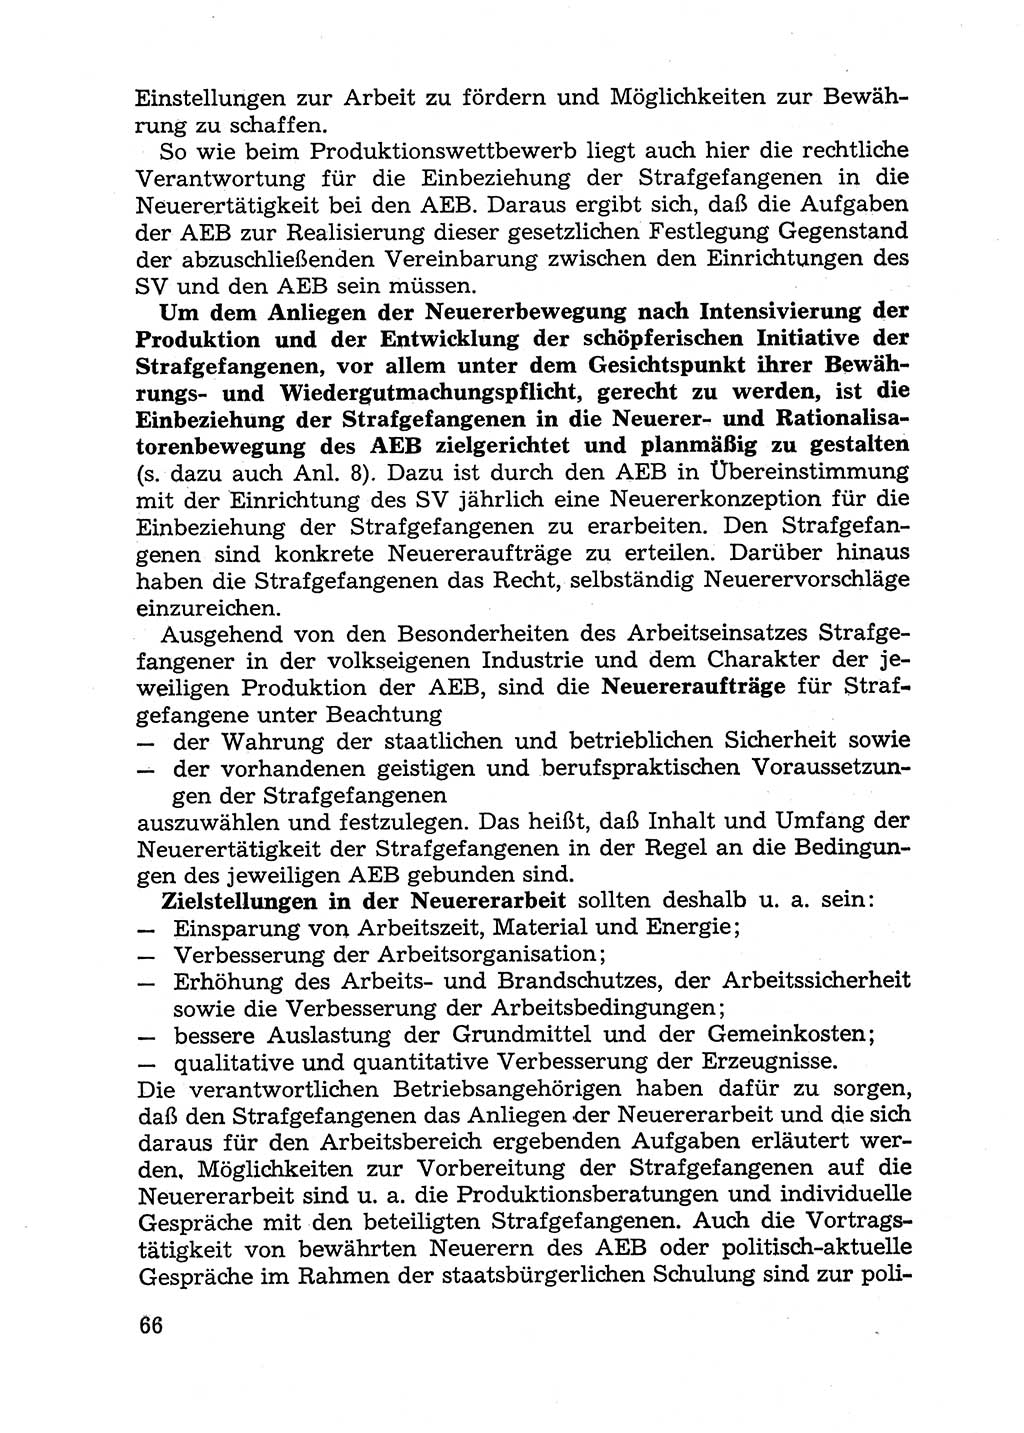 Handbuch für Betriebsangehörige, Abteilung Strafvollzug (SV) [Ministerium des Innern (MdI) Deutsche Demokratische Republik (DDR)] 1981, Seite 66 (Hb. BA Abt. SV MdI DDR 1981, S. 66)